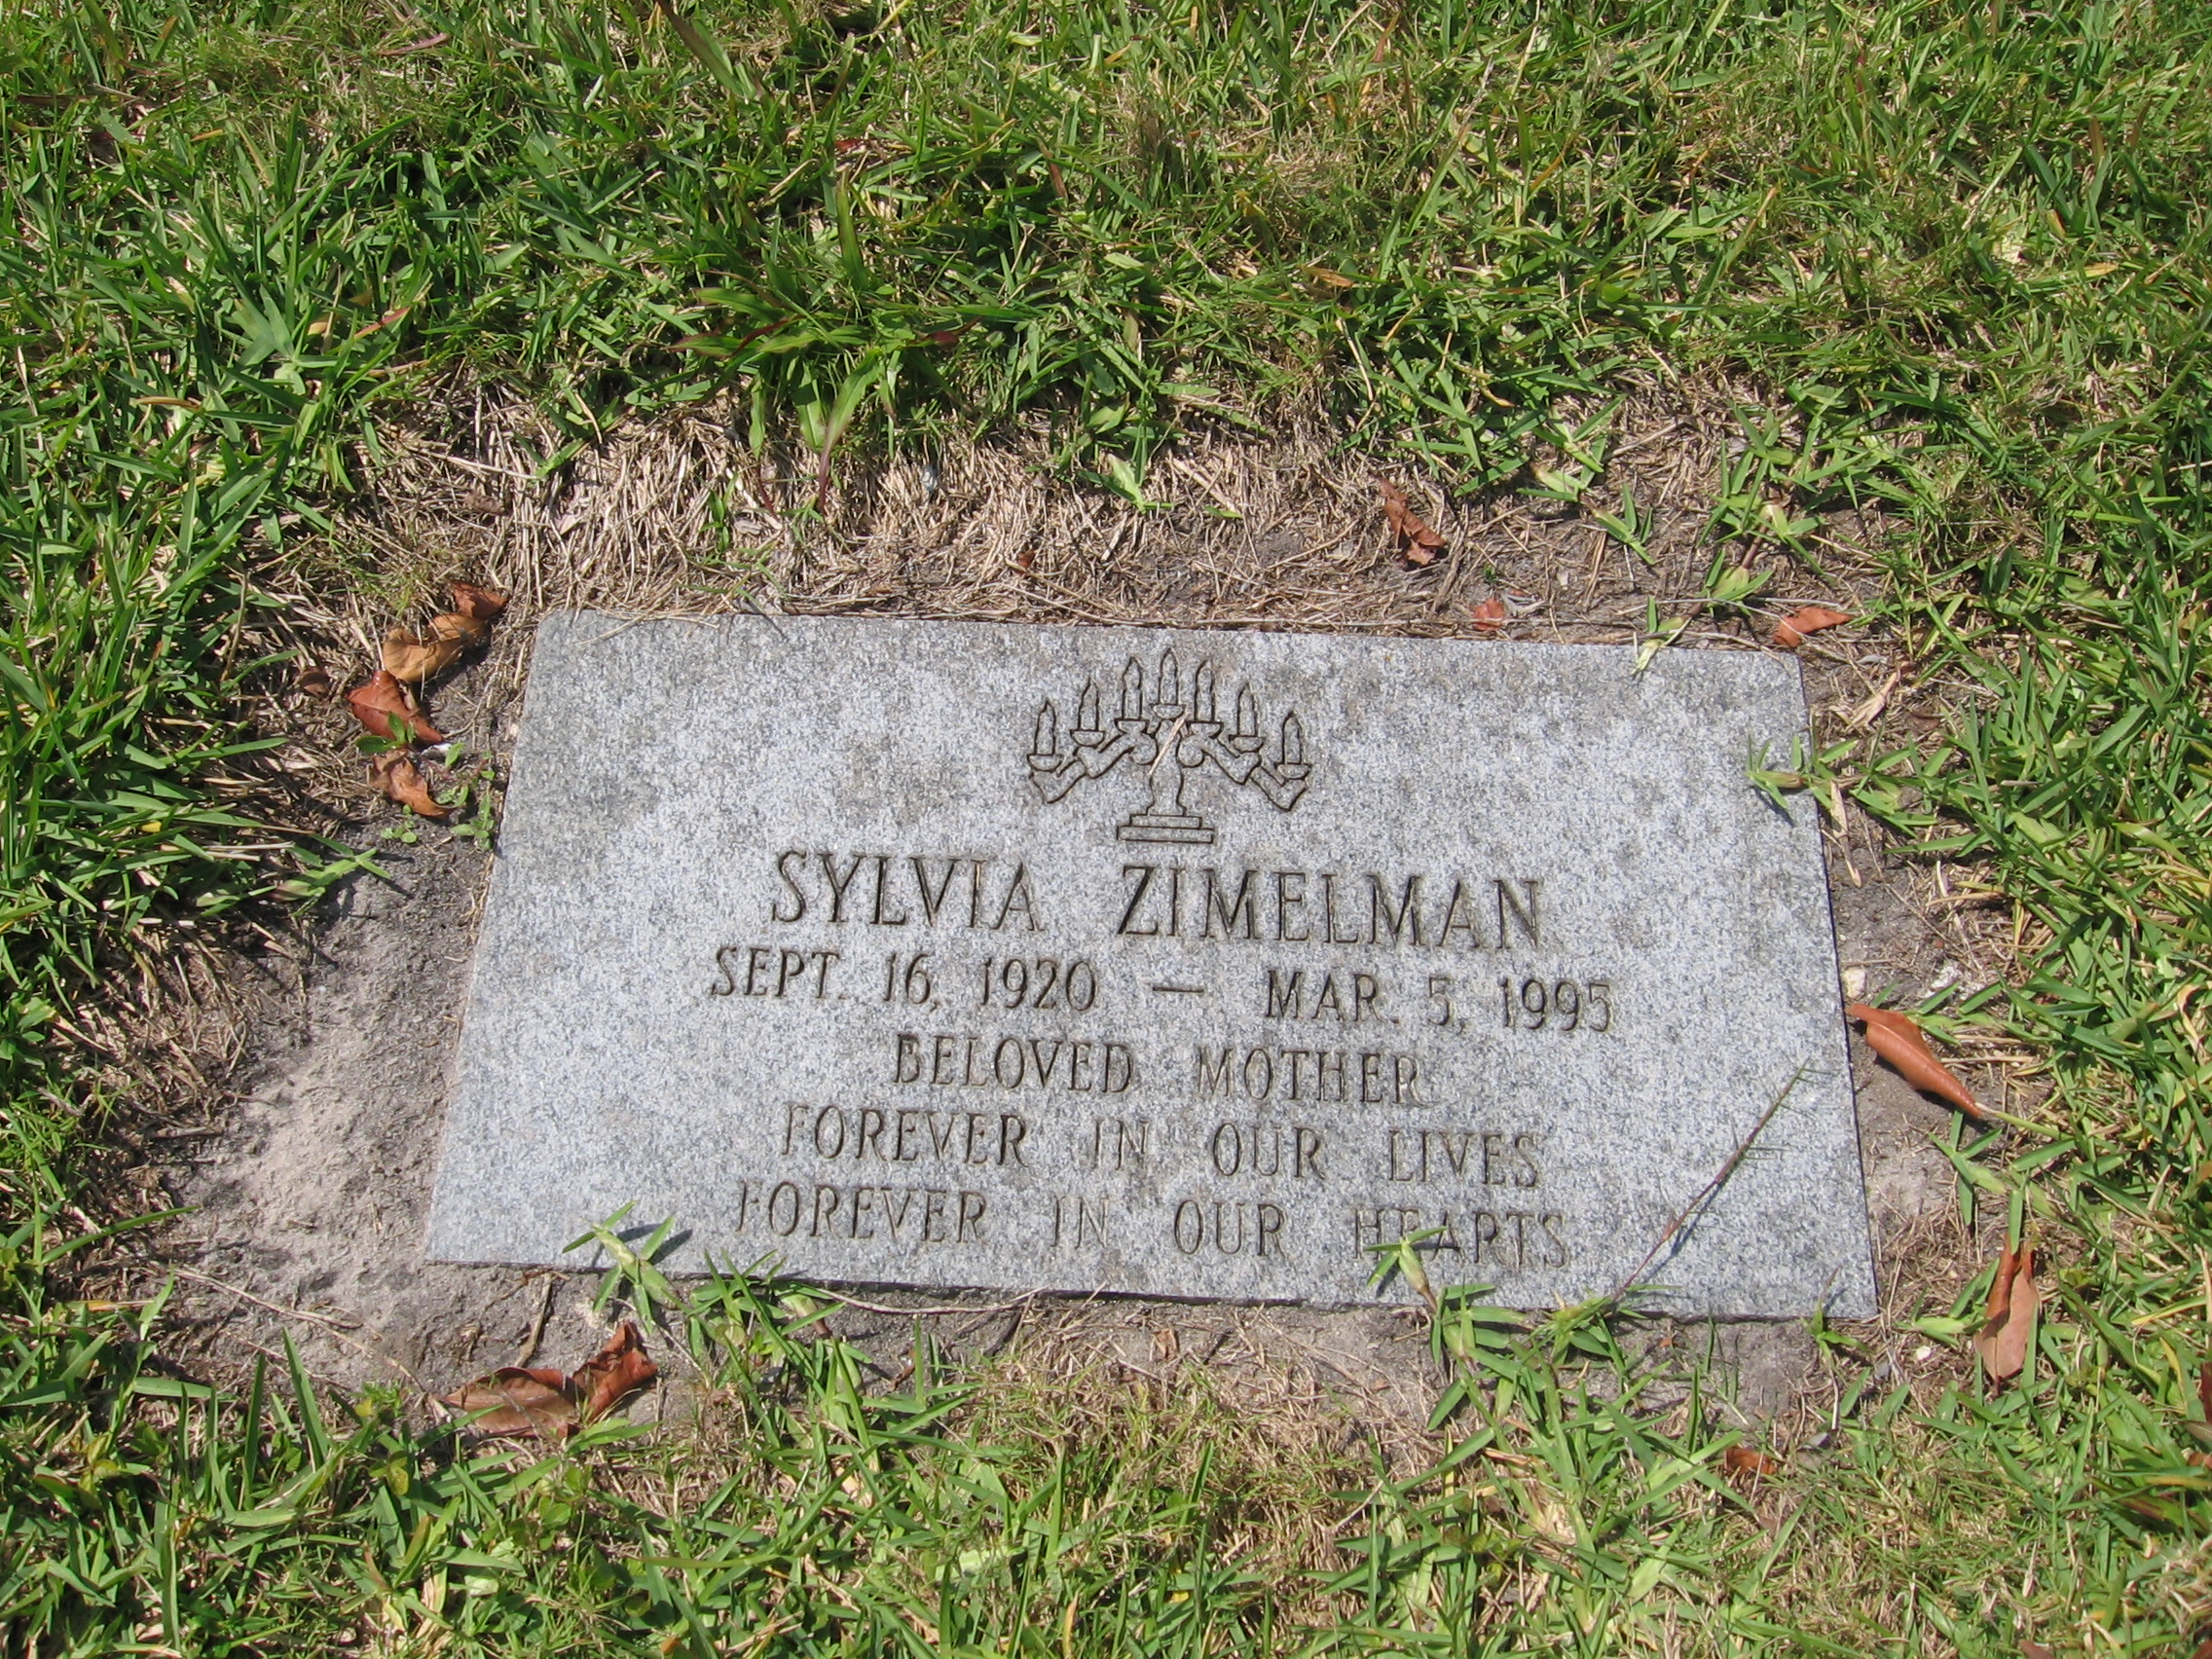 Sylvia Zimelman